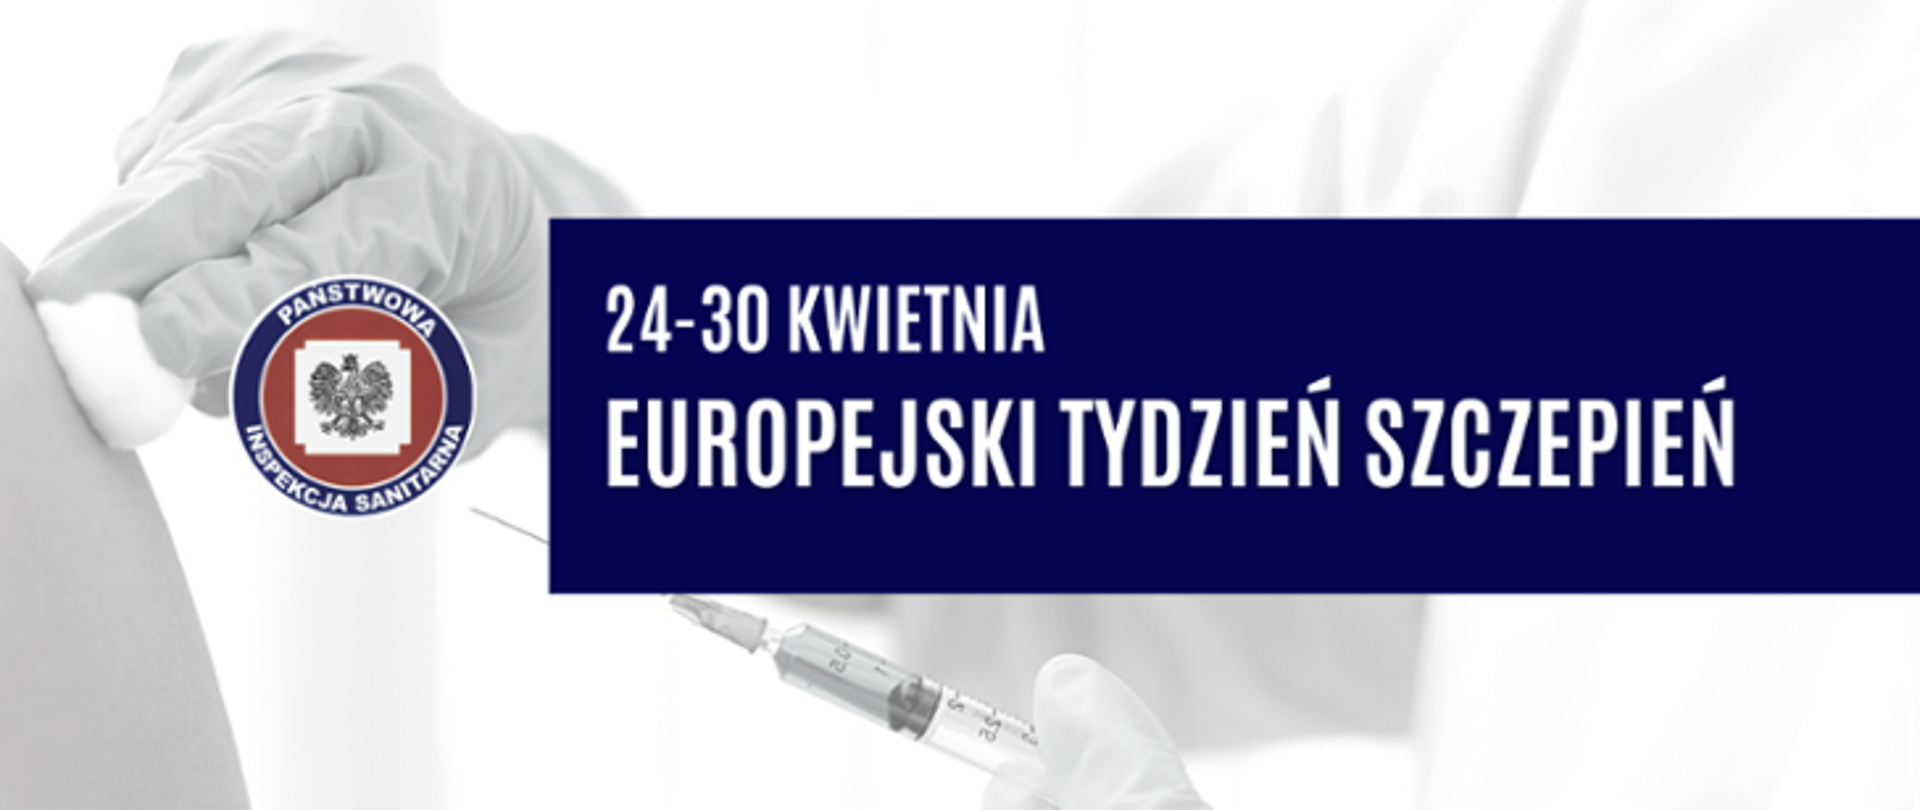 Obrazek z hasłem Europejski Tydzień szczepień 2022 24-30 KWIETNIA 